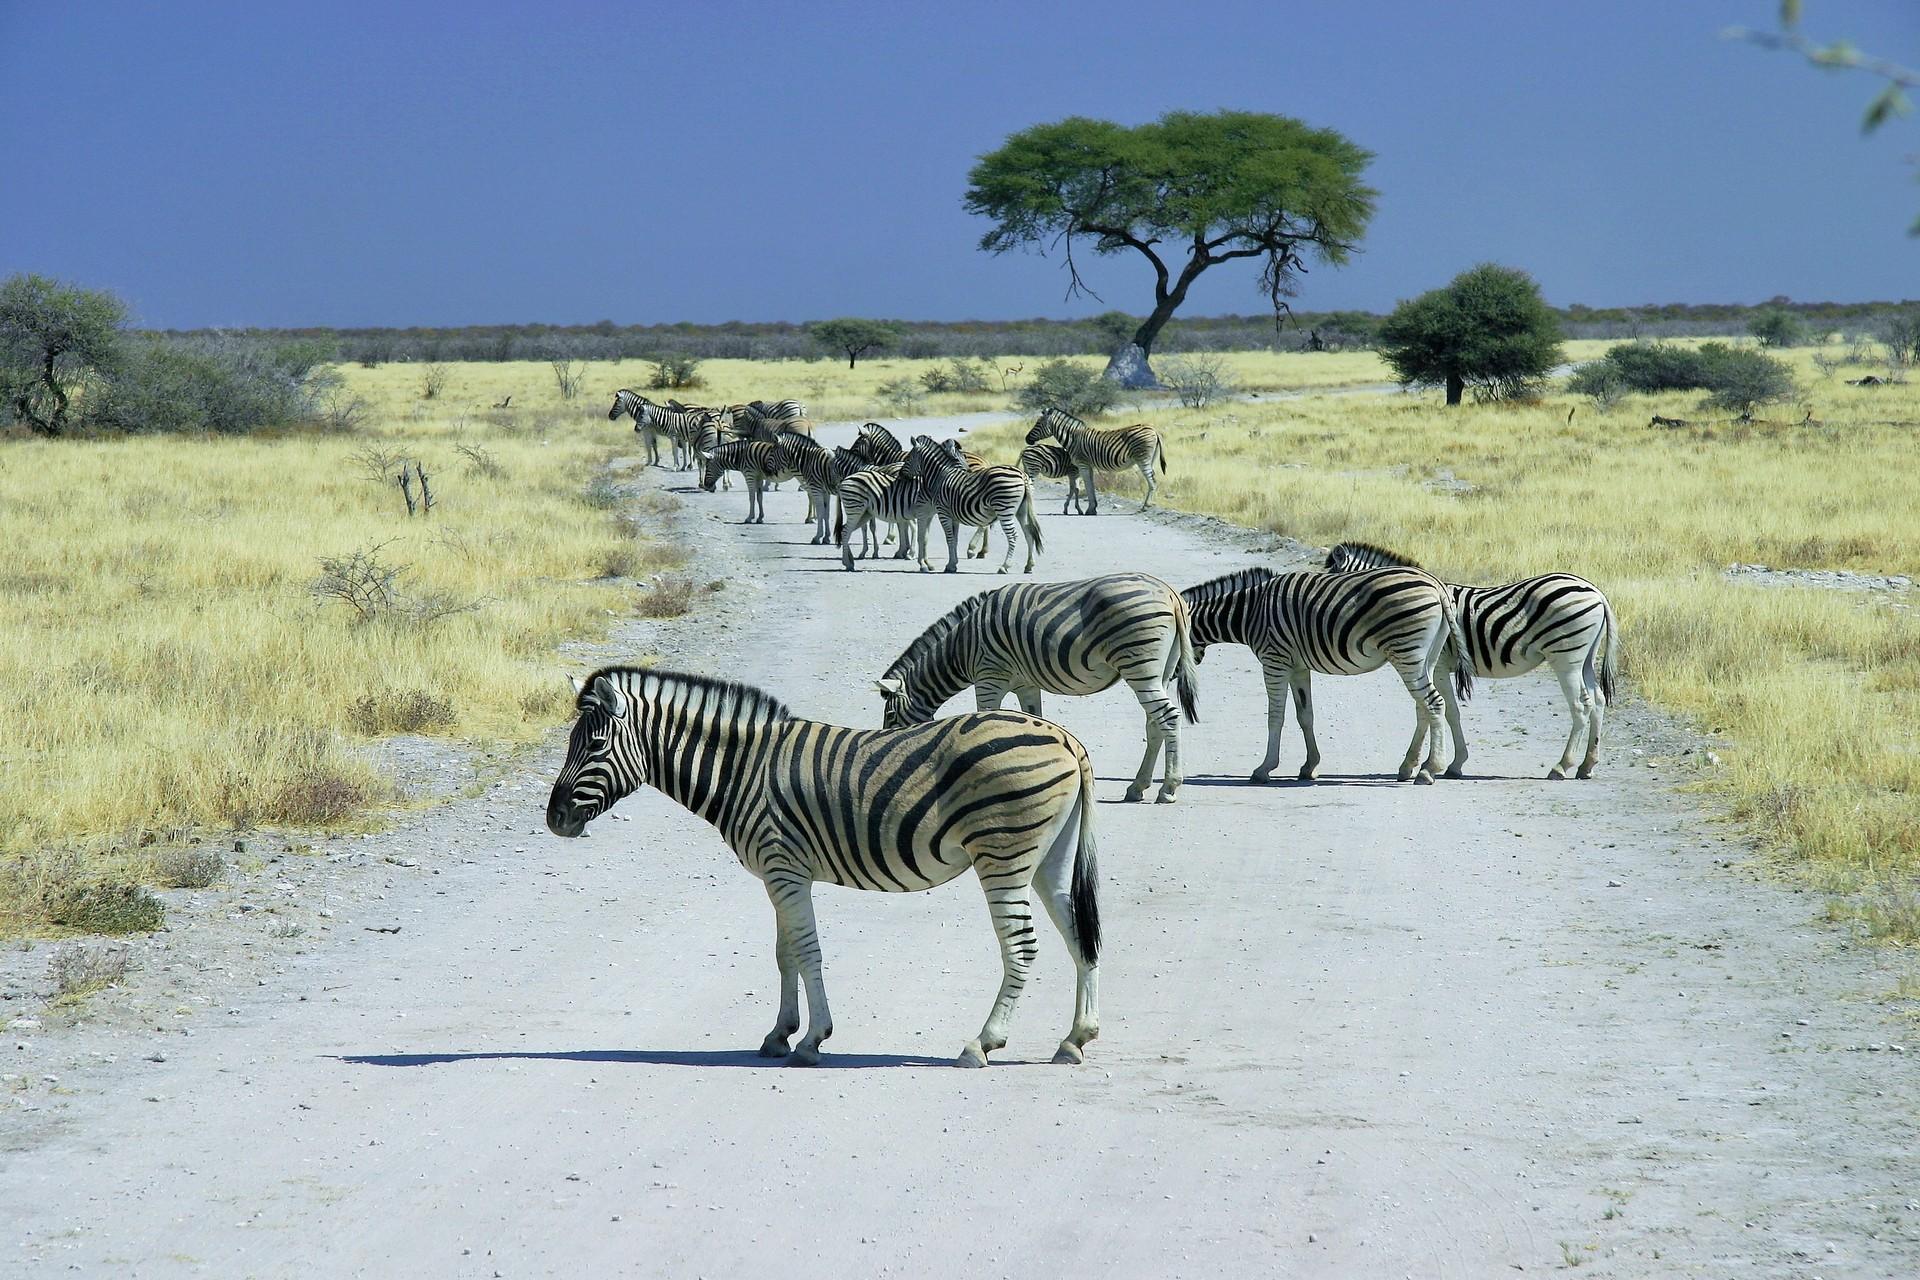 Zebras in Namibia.